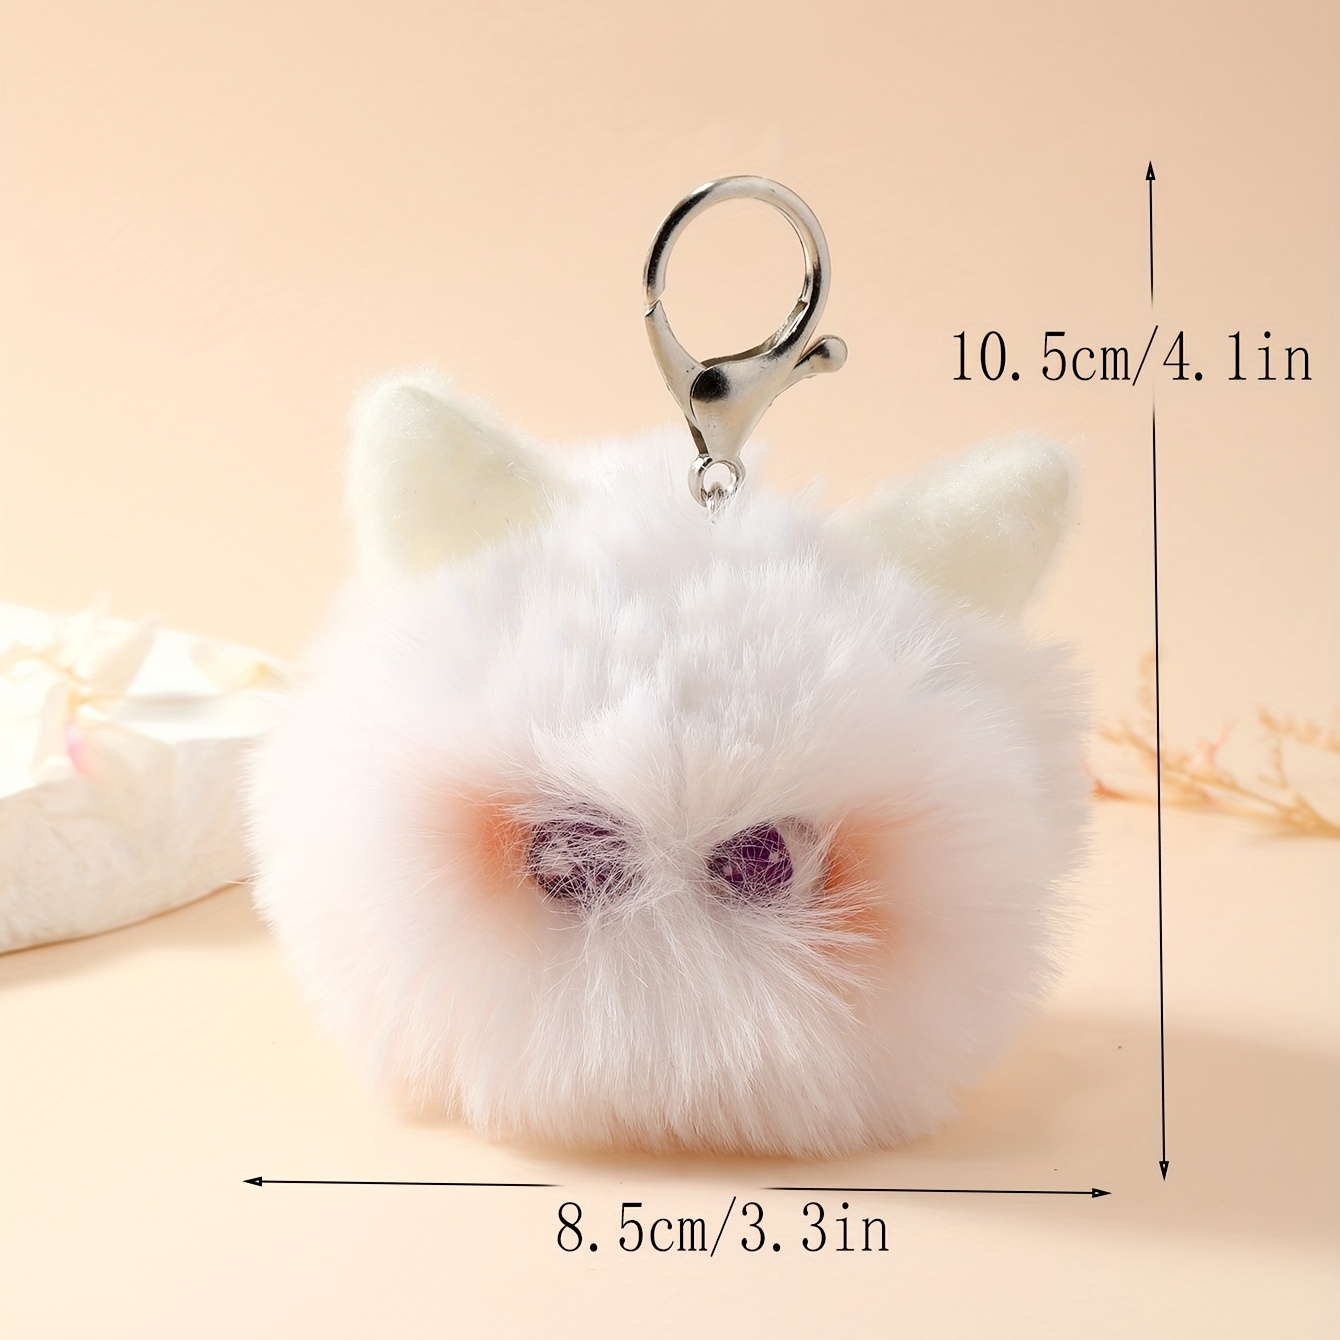 Cute Animal Pom Pom Keychain Faux Fur Fluffy Key Ring for Women Girls